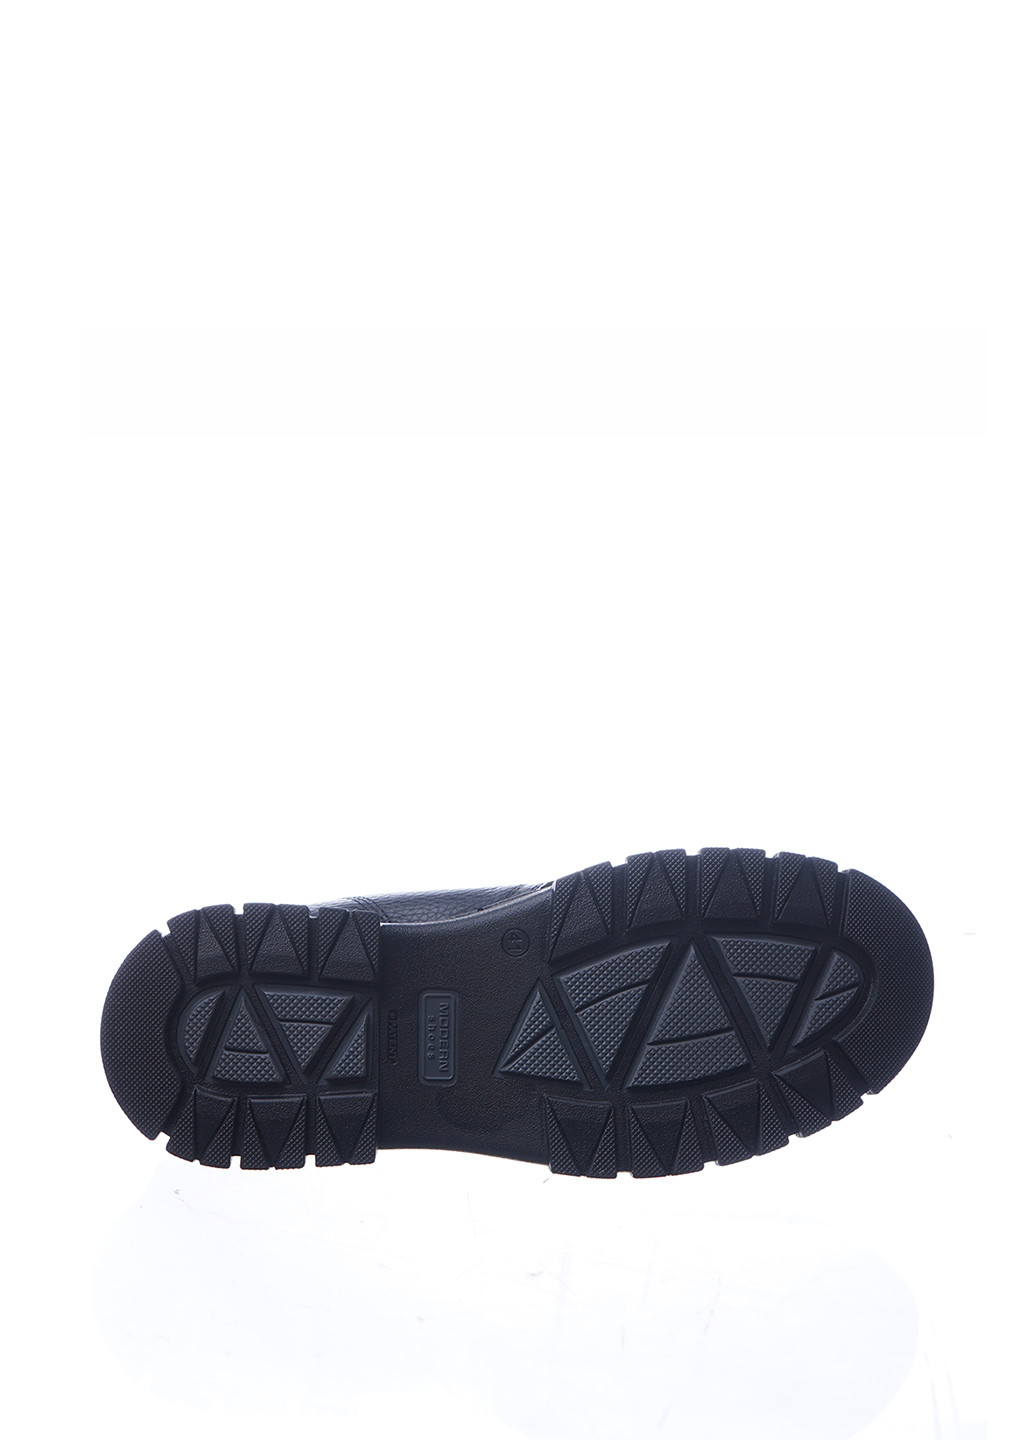 Черные зимние ботинки редвинги Libero